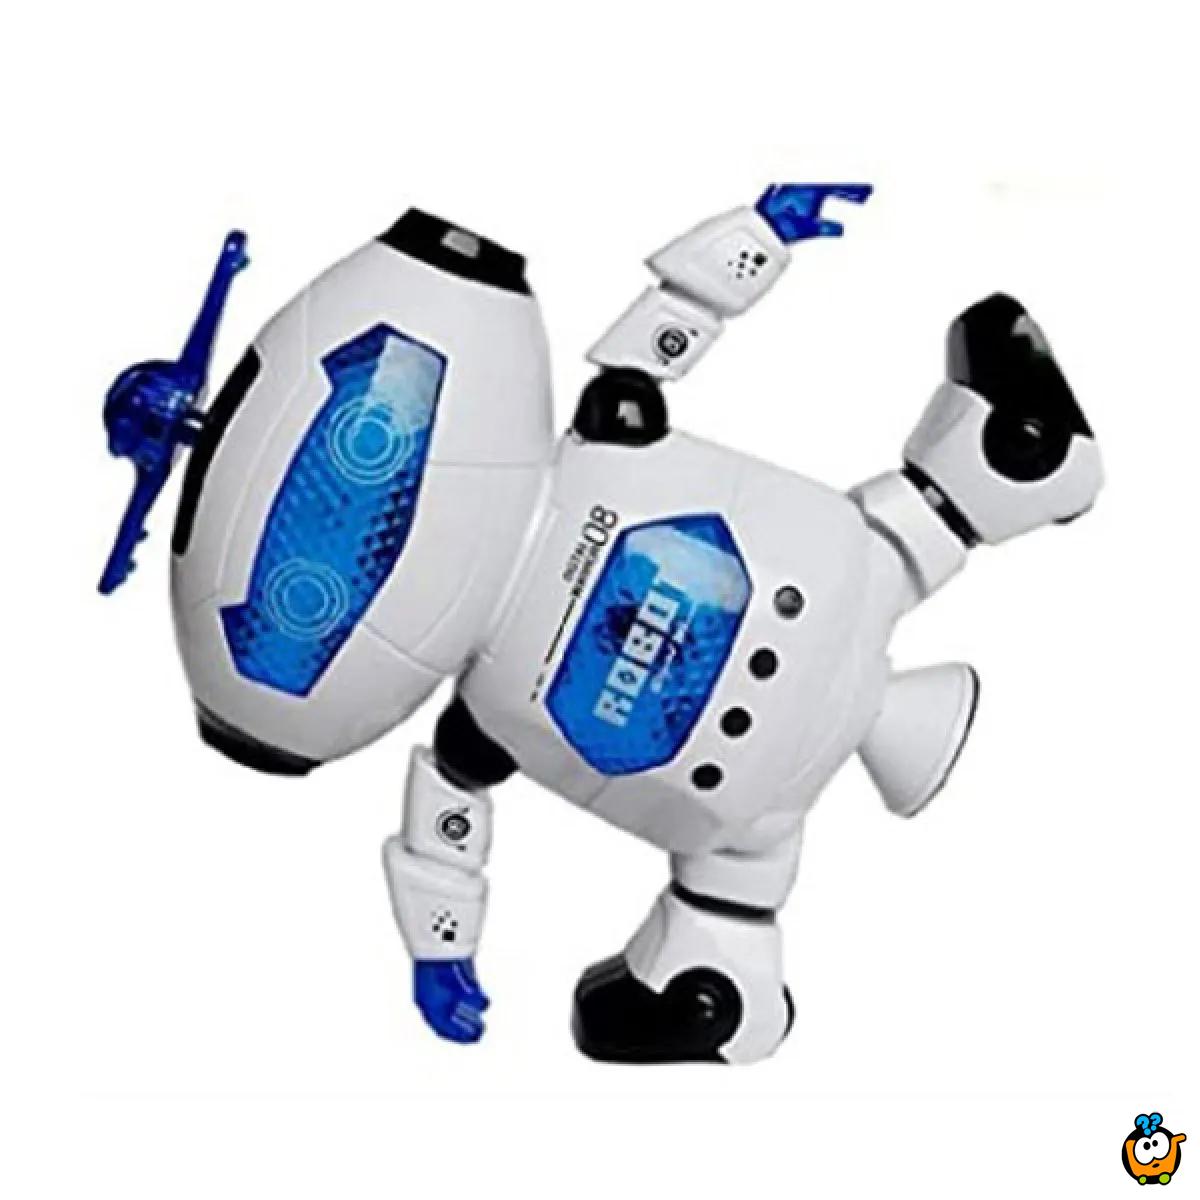 Boy Toymachine - Robot igračka koja se rotira 360 stepeni